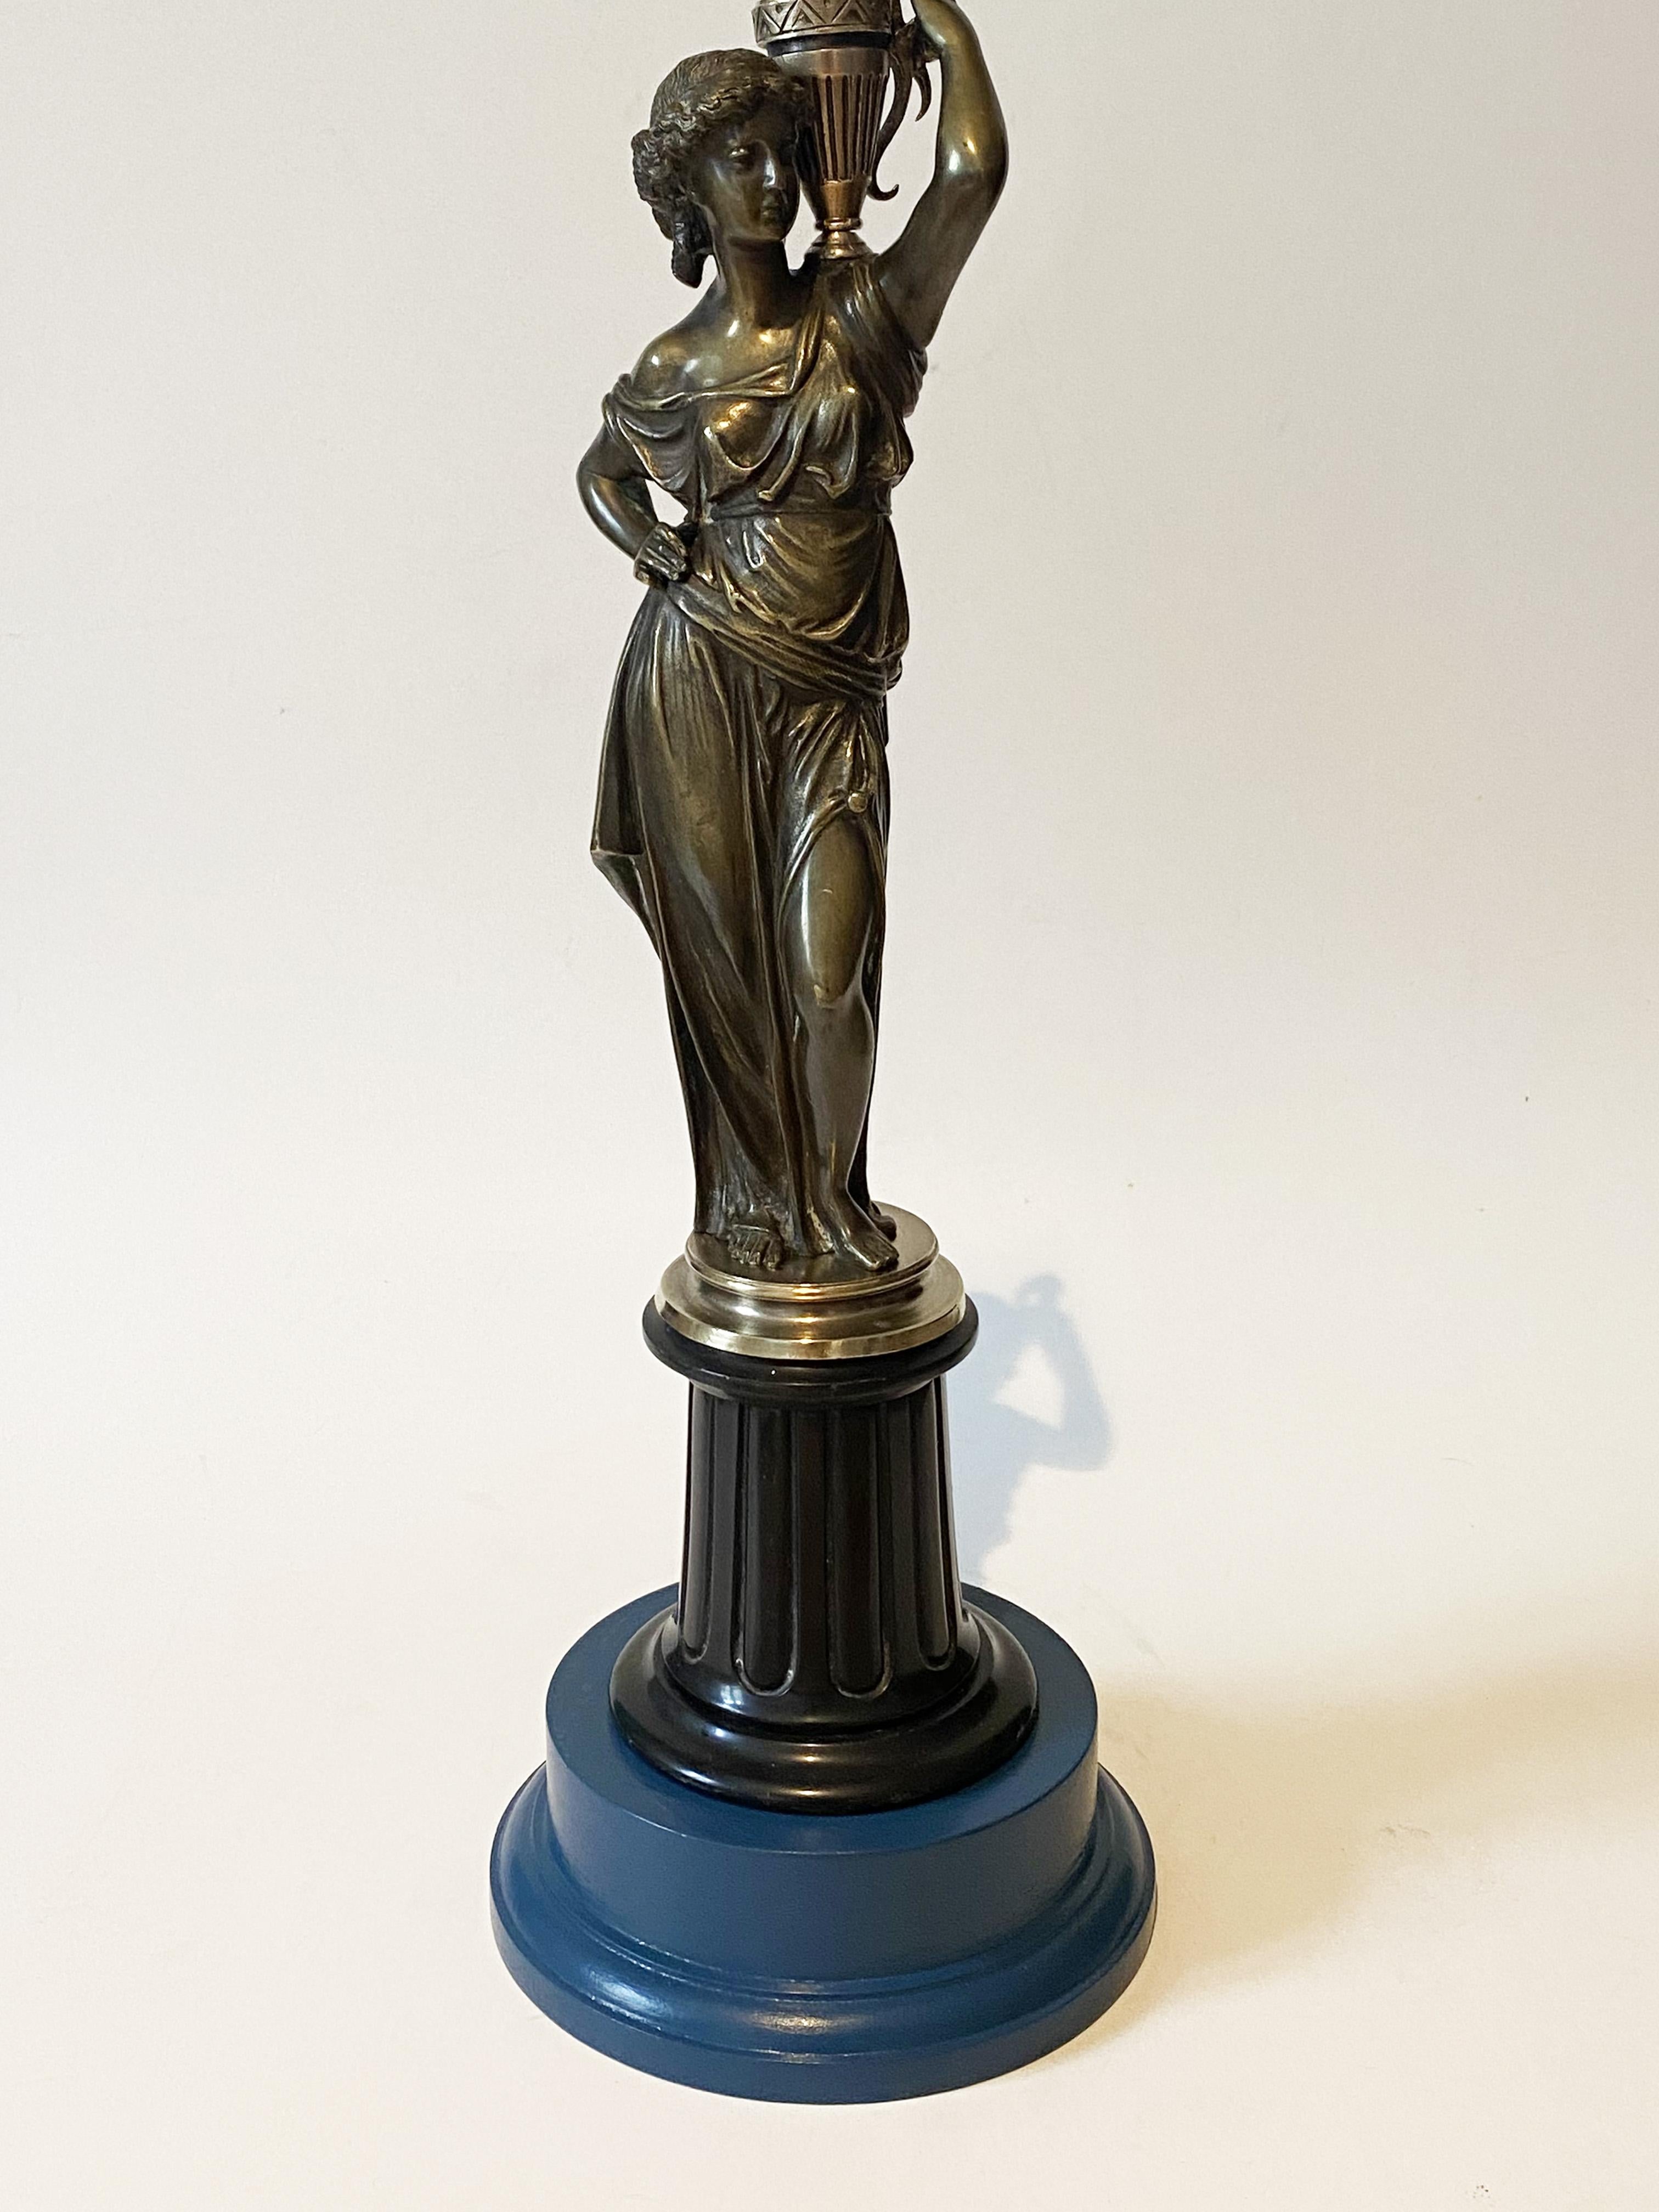 Französisch Bronze Karyatide Flare Kandelaber Lampe, 
Wasserträgerin (wahrscheinlich Sephora)
XIX Jahrhundert.